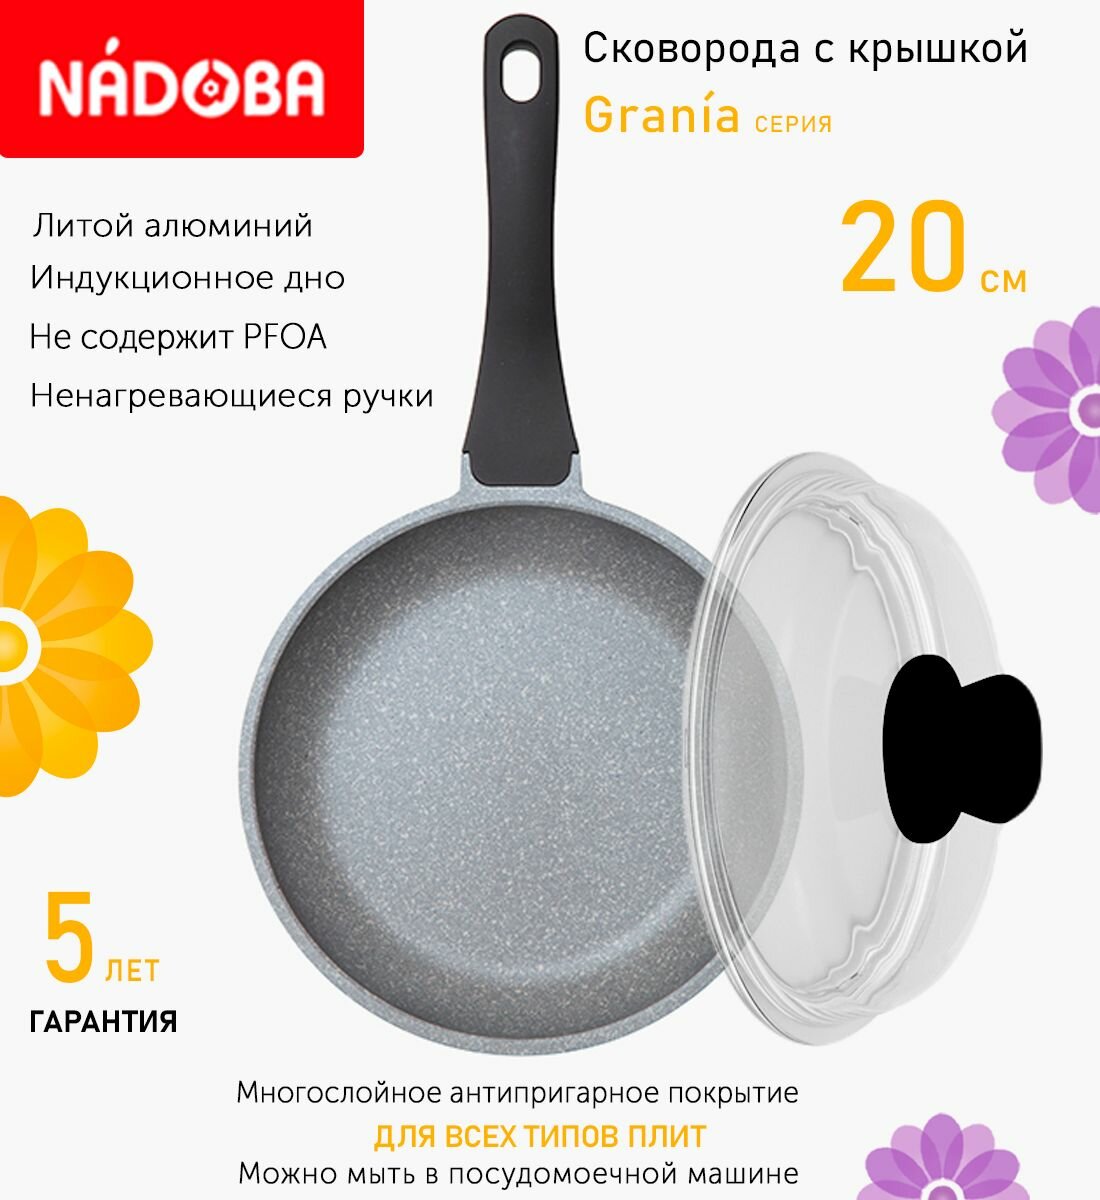 Сковорода с крышкой NADOBA 20см, серия "Grania" (арт. 728119/751115)